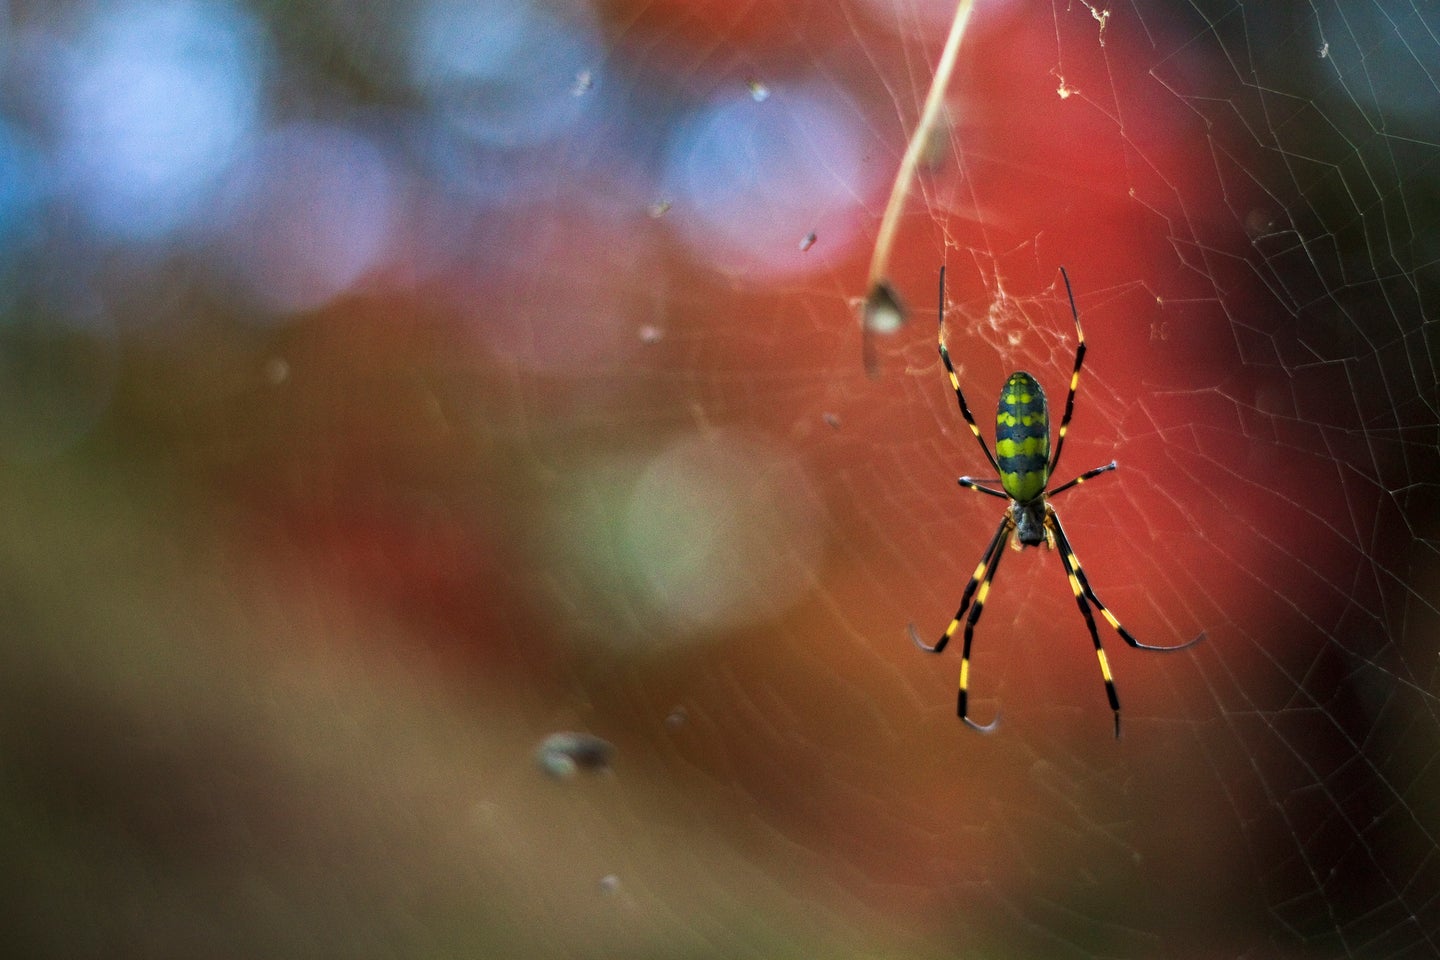 Joro spider spinning a web.